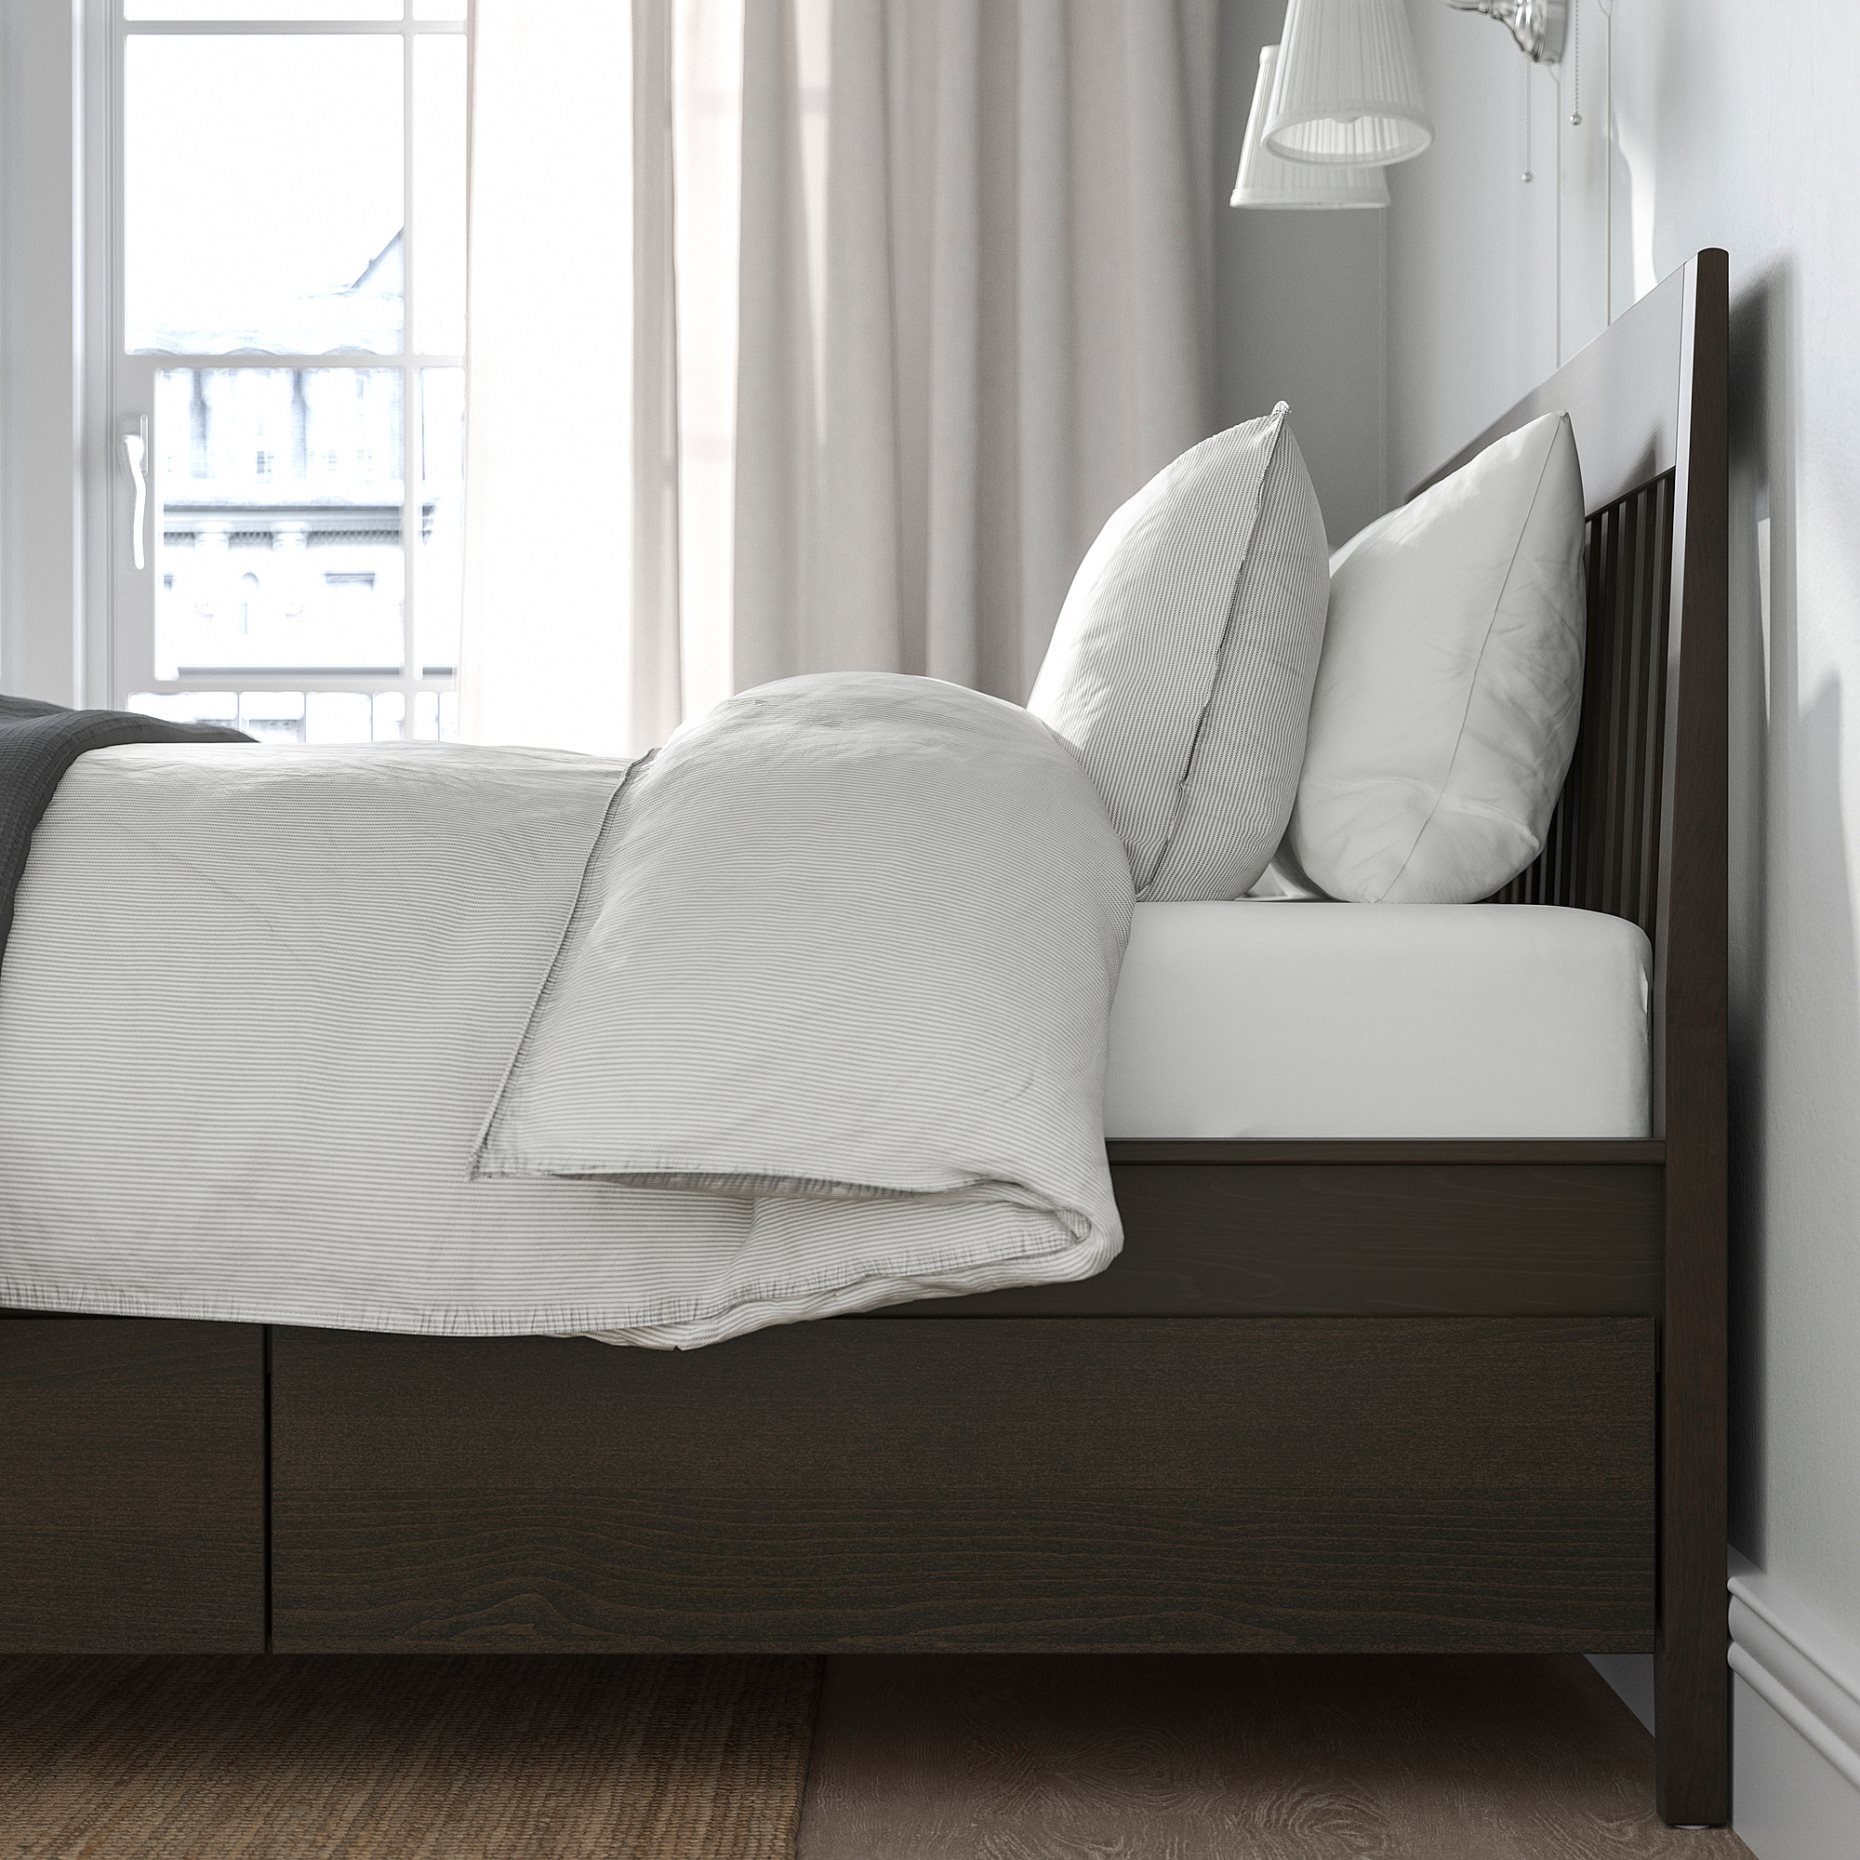 IDANÄS, bed frame with storage, 160x200 cm, 393.922.24